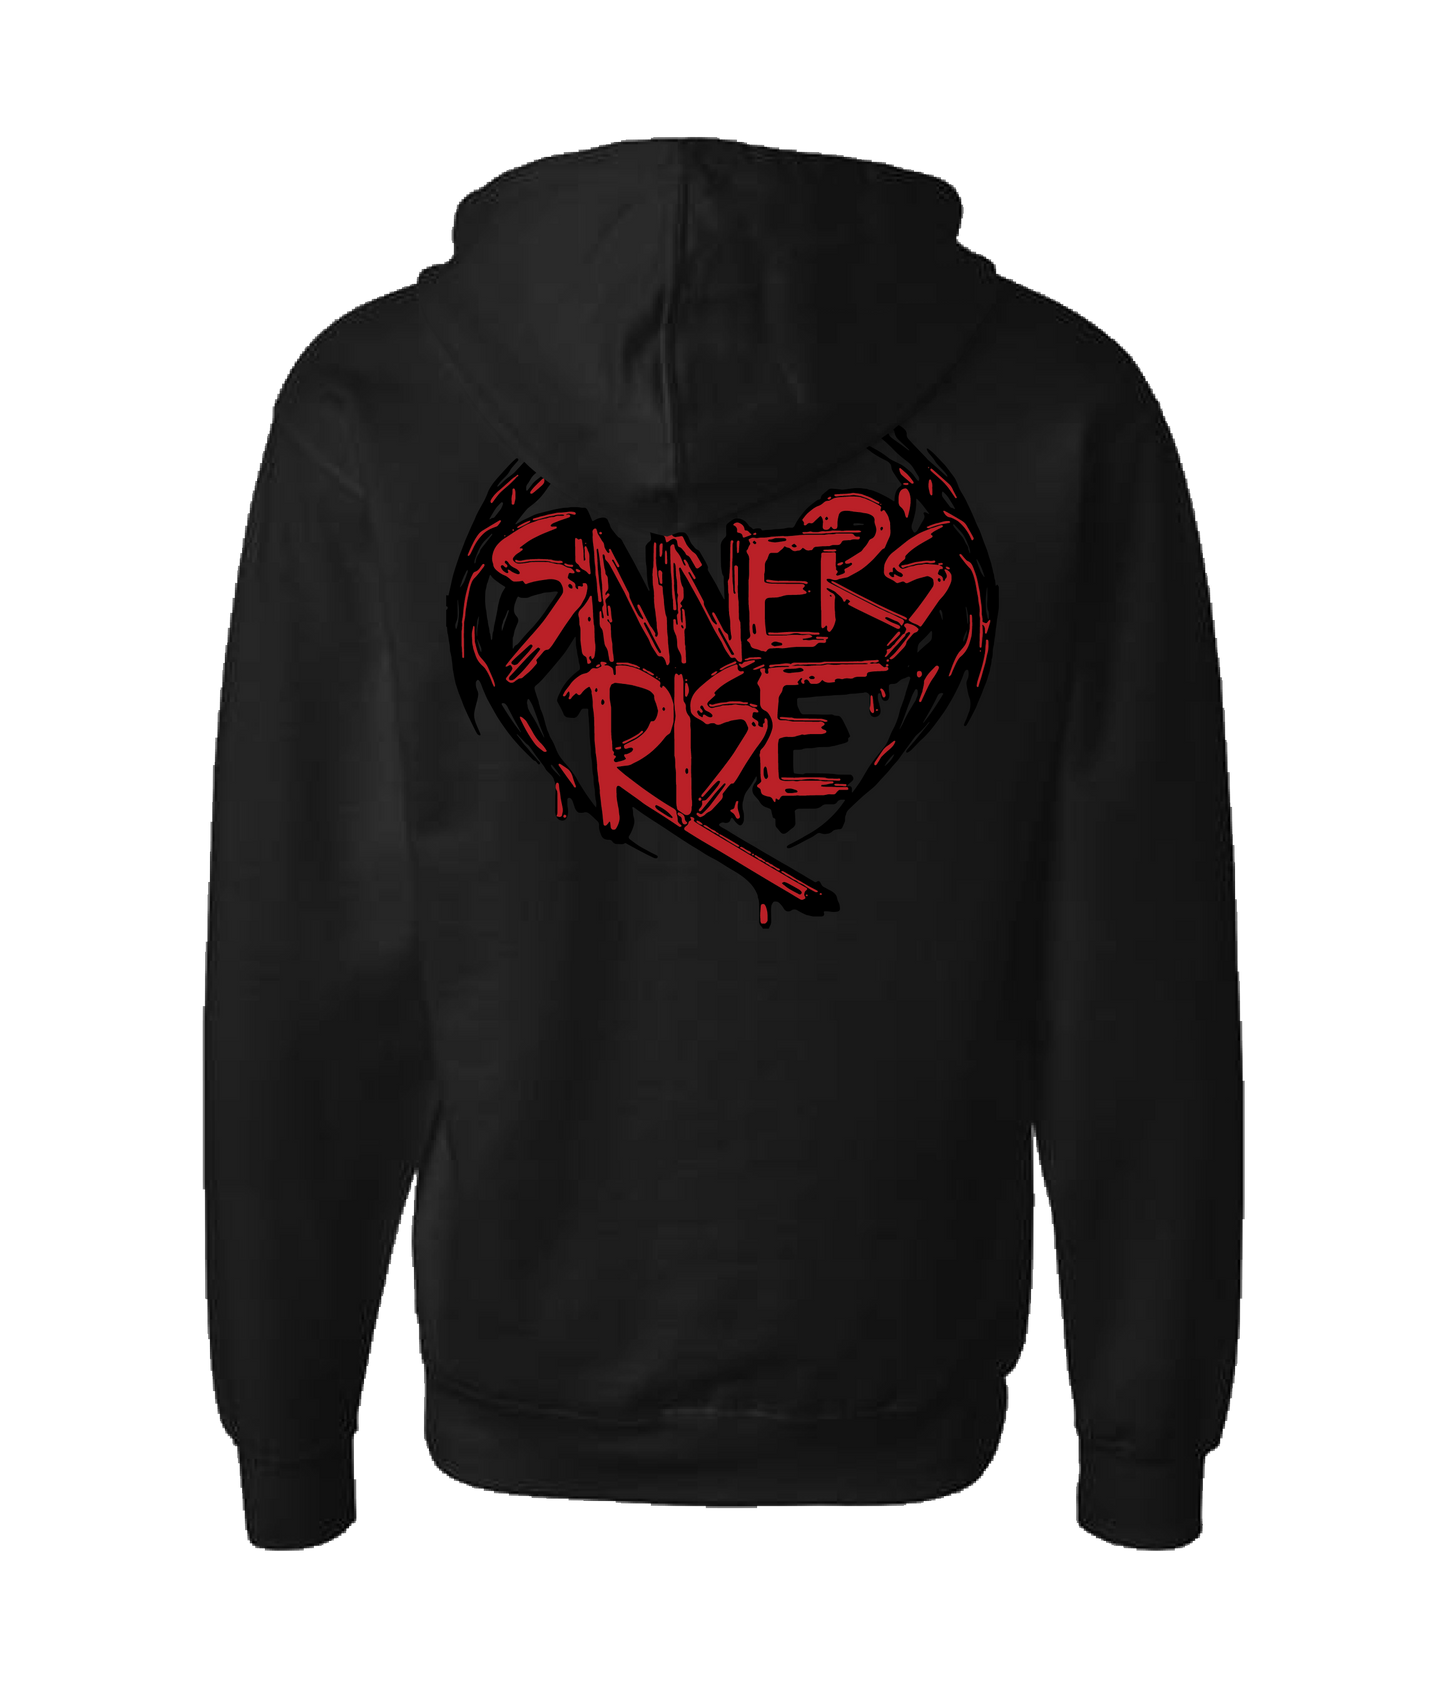 Sinner's Rise - Logo (red) - Black Zip Up Hoodie